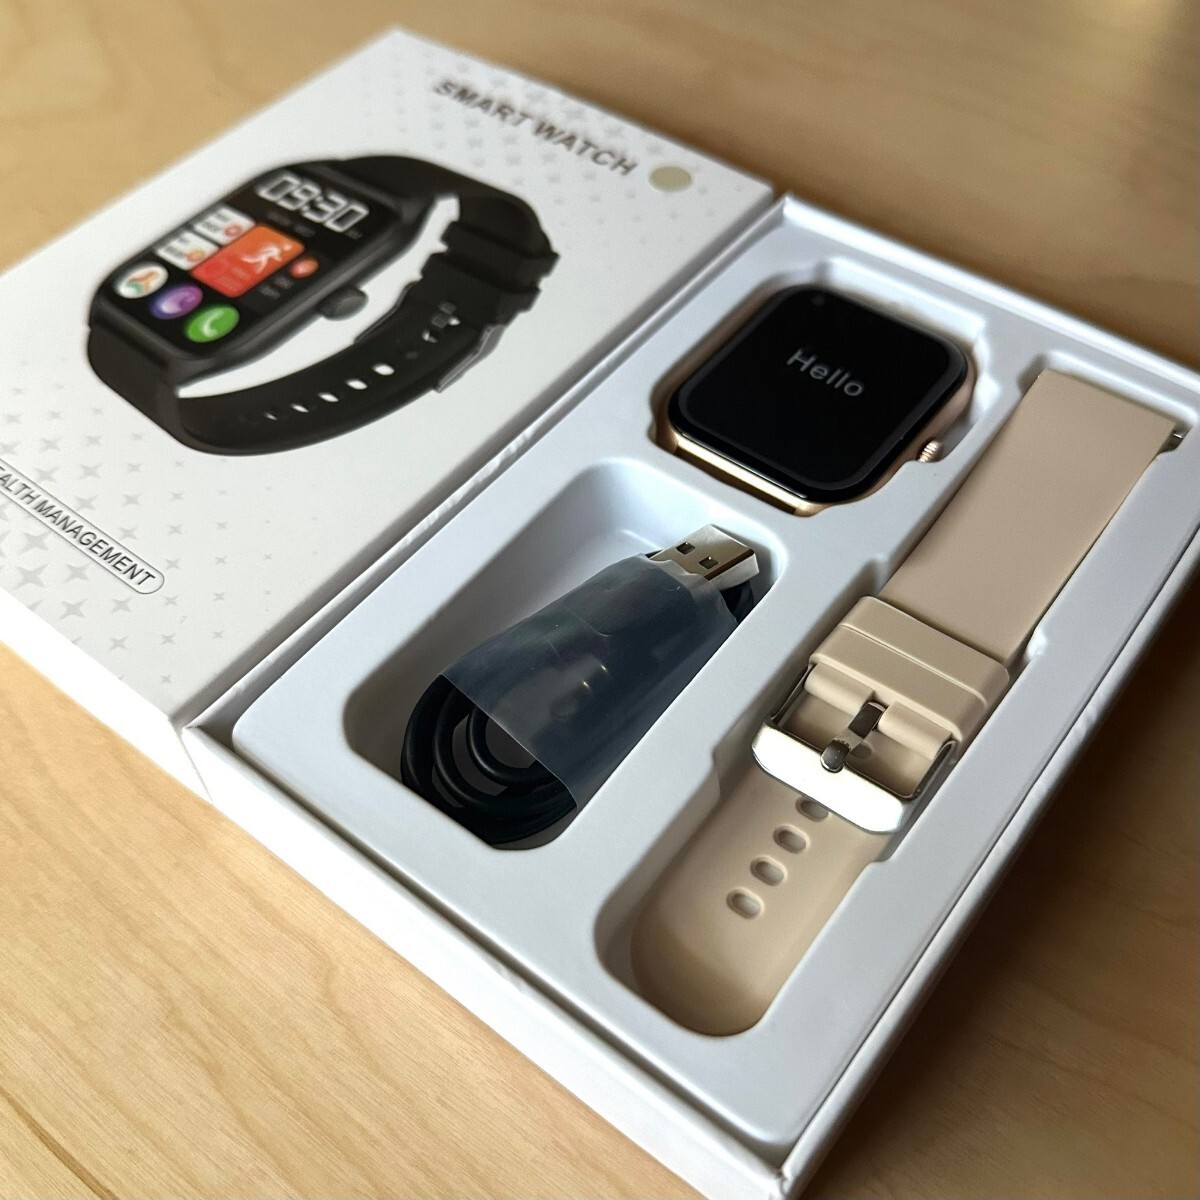  смарт-часы iPhone соответствует телефонный разговор функция 1.96 дюймовый наручные часы бежевый 